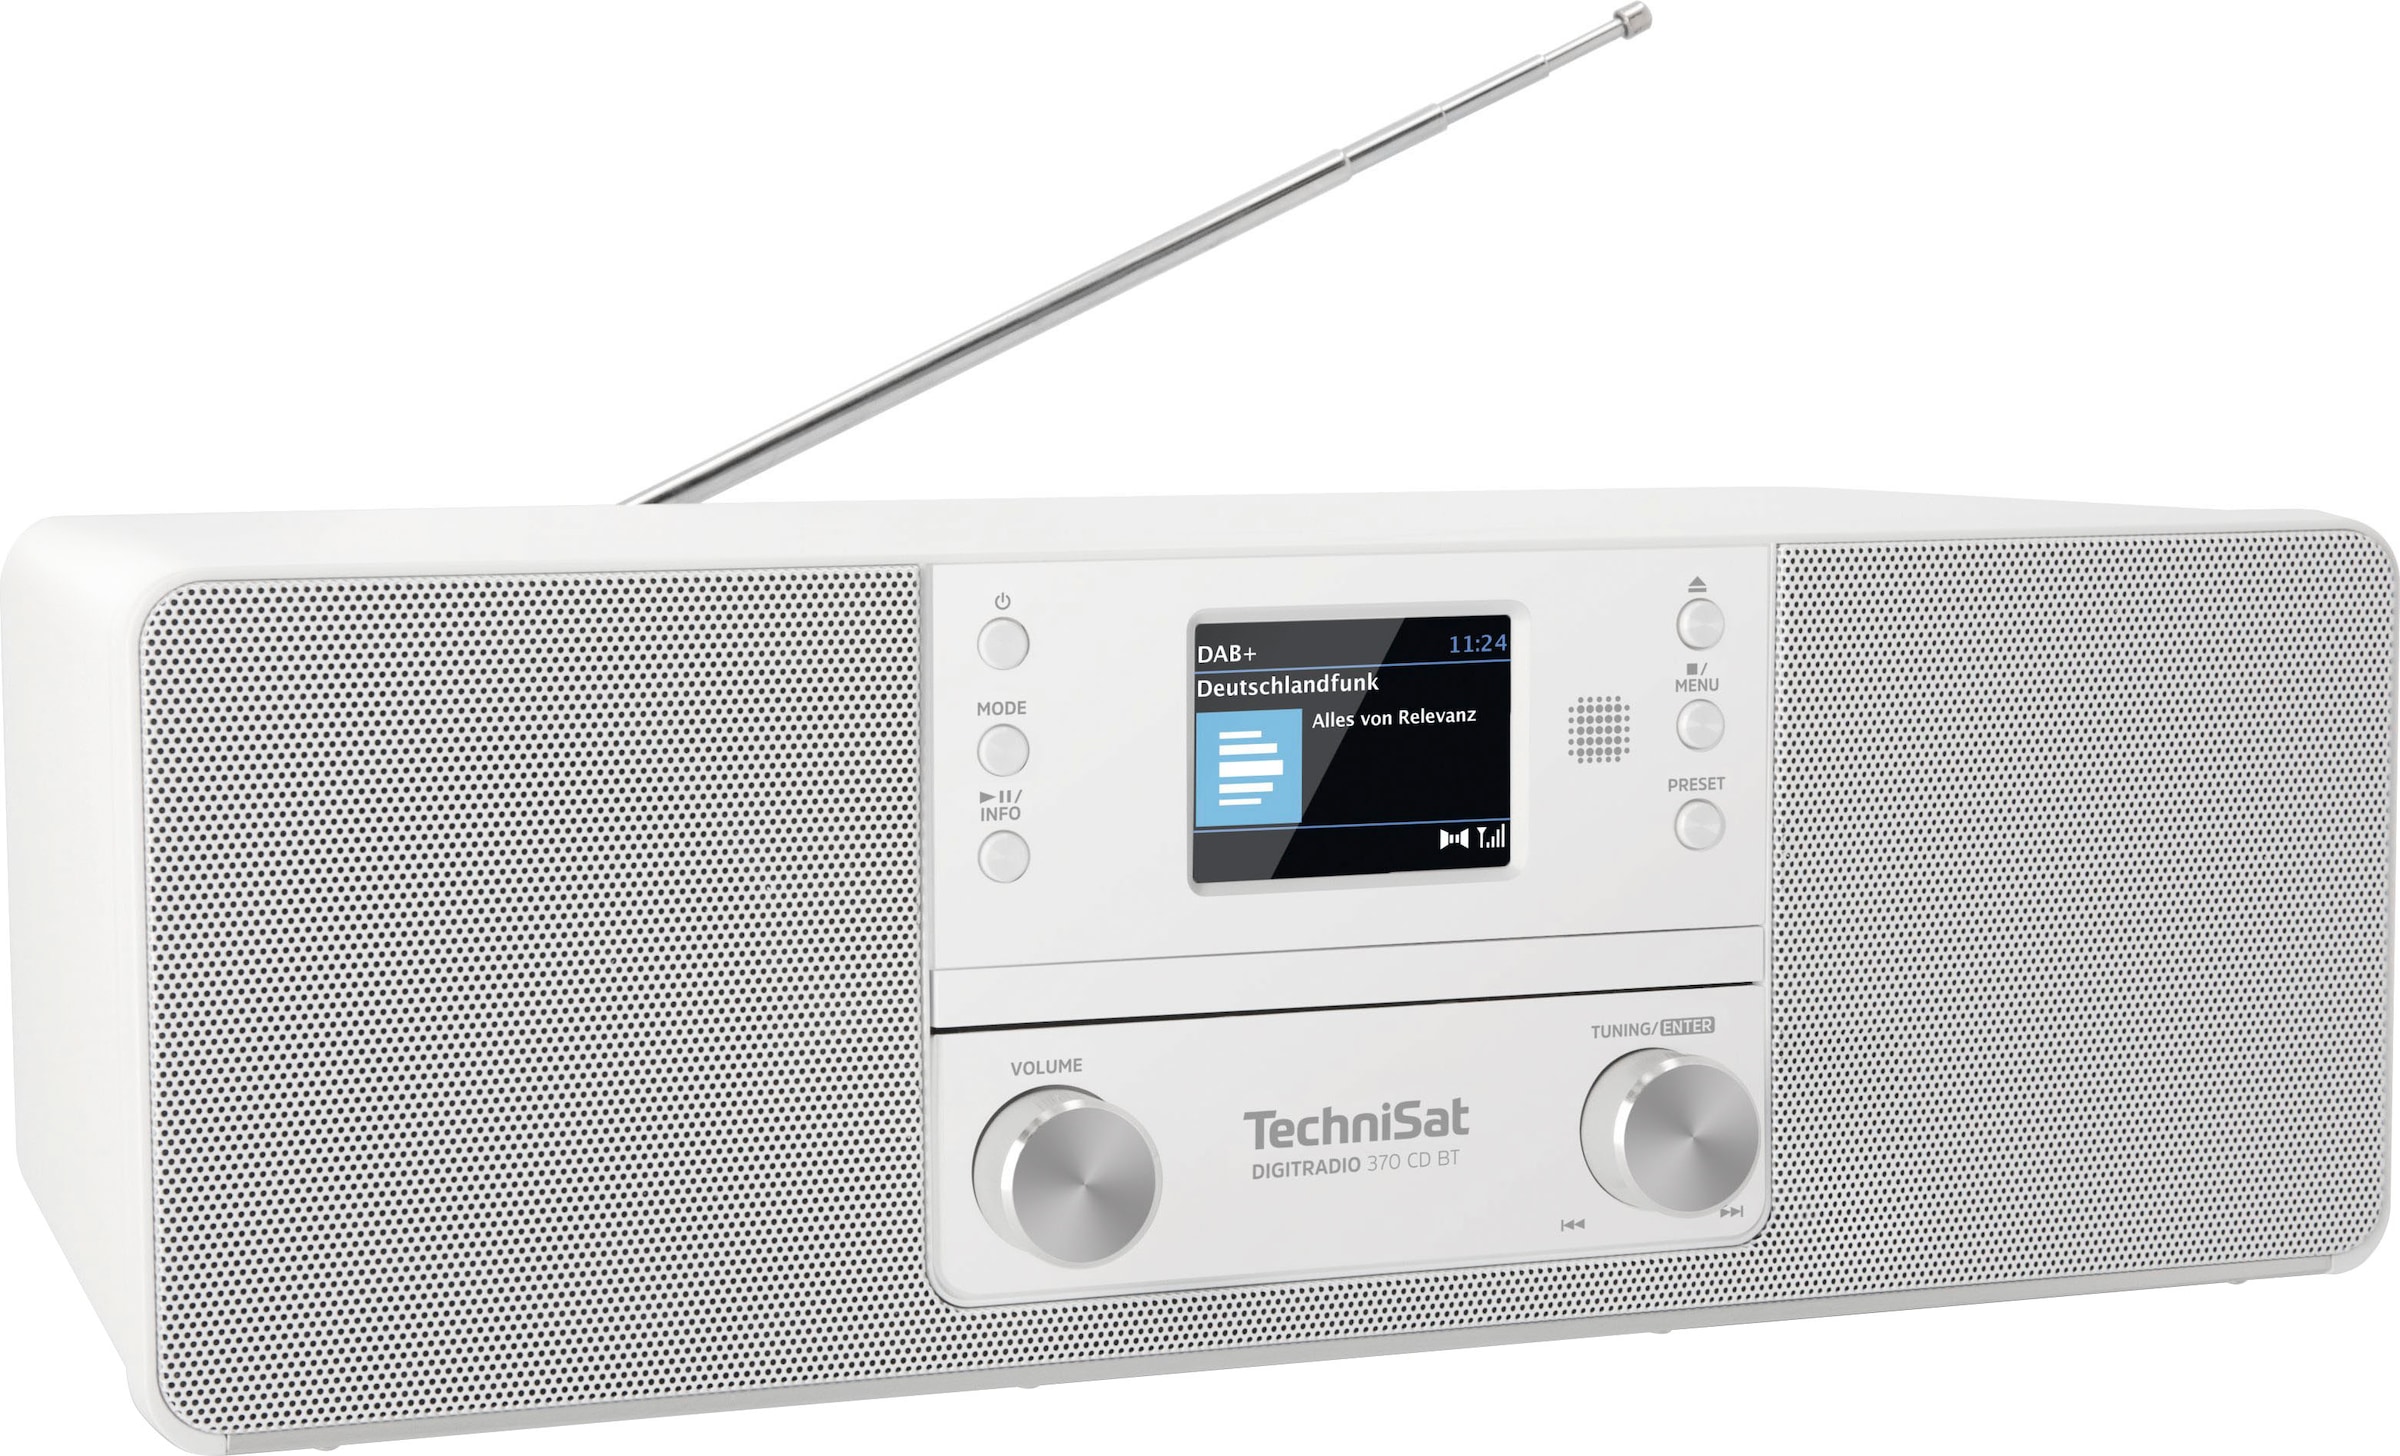 OTTO BT«, UKW »DIGITRADIO kaufen bei mit Digitalradio RDS-Digitalradio jetzt (Bluetooth CD (DAB+) 370 10 TechniSat W) (DAB+)